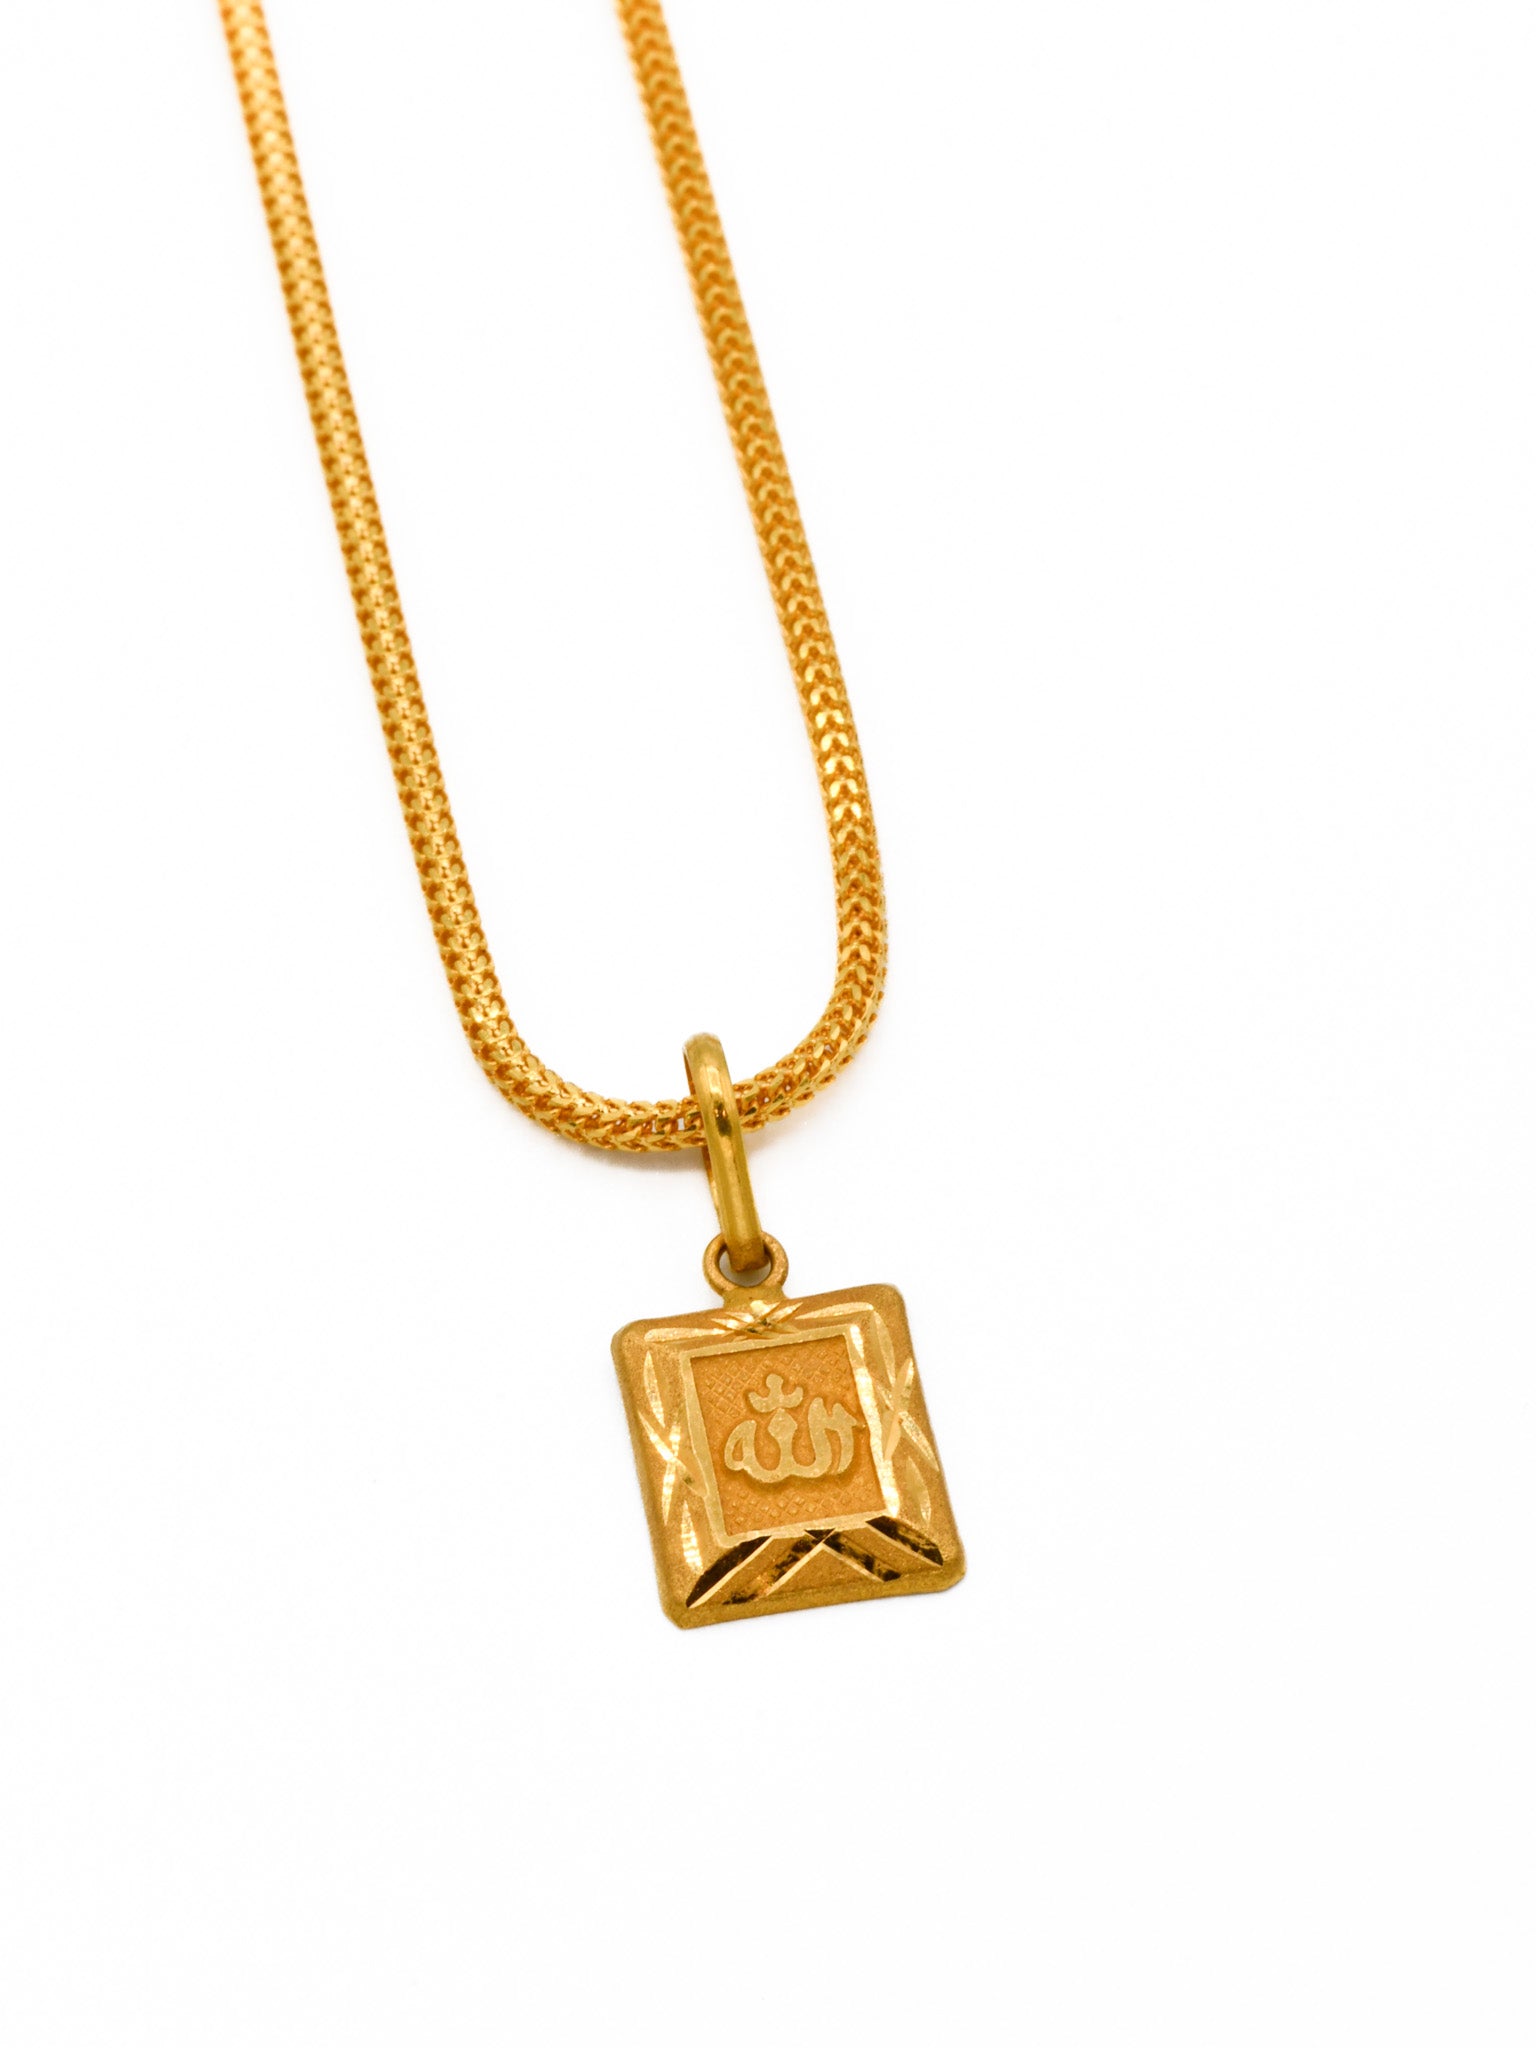 Muslim Allah Islam Pendant Necklace Golden | eBay